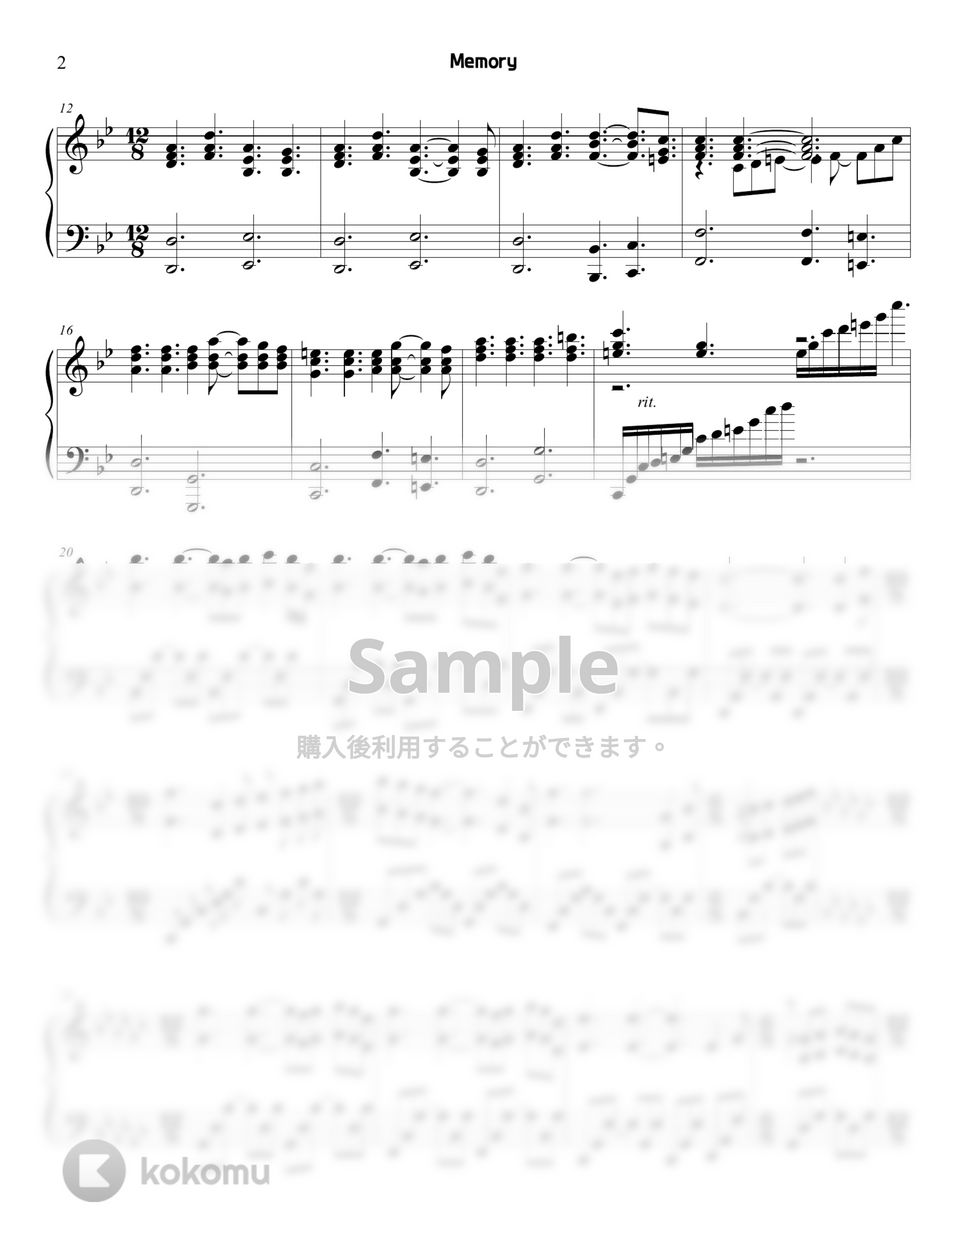 キャッツ - Memory by Sunny Fingers Piano